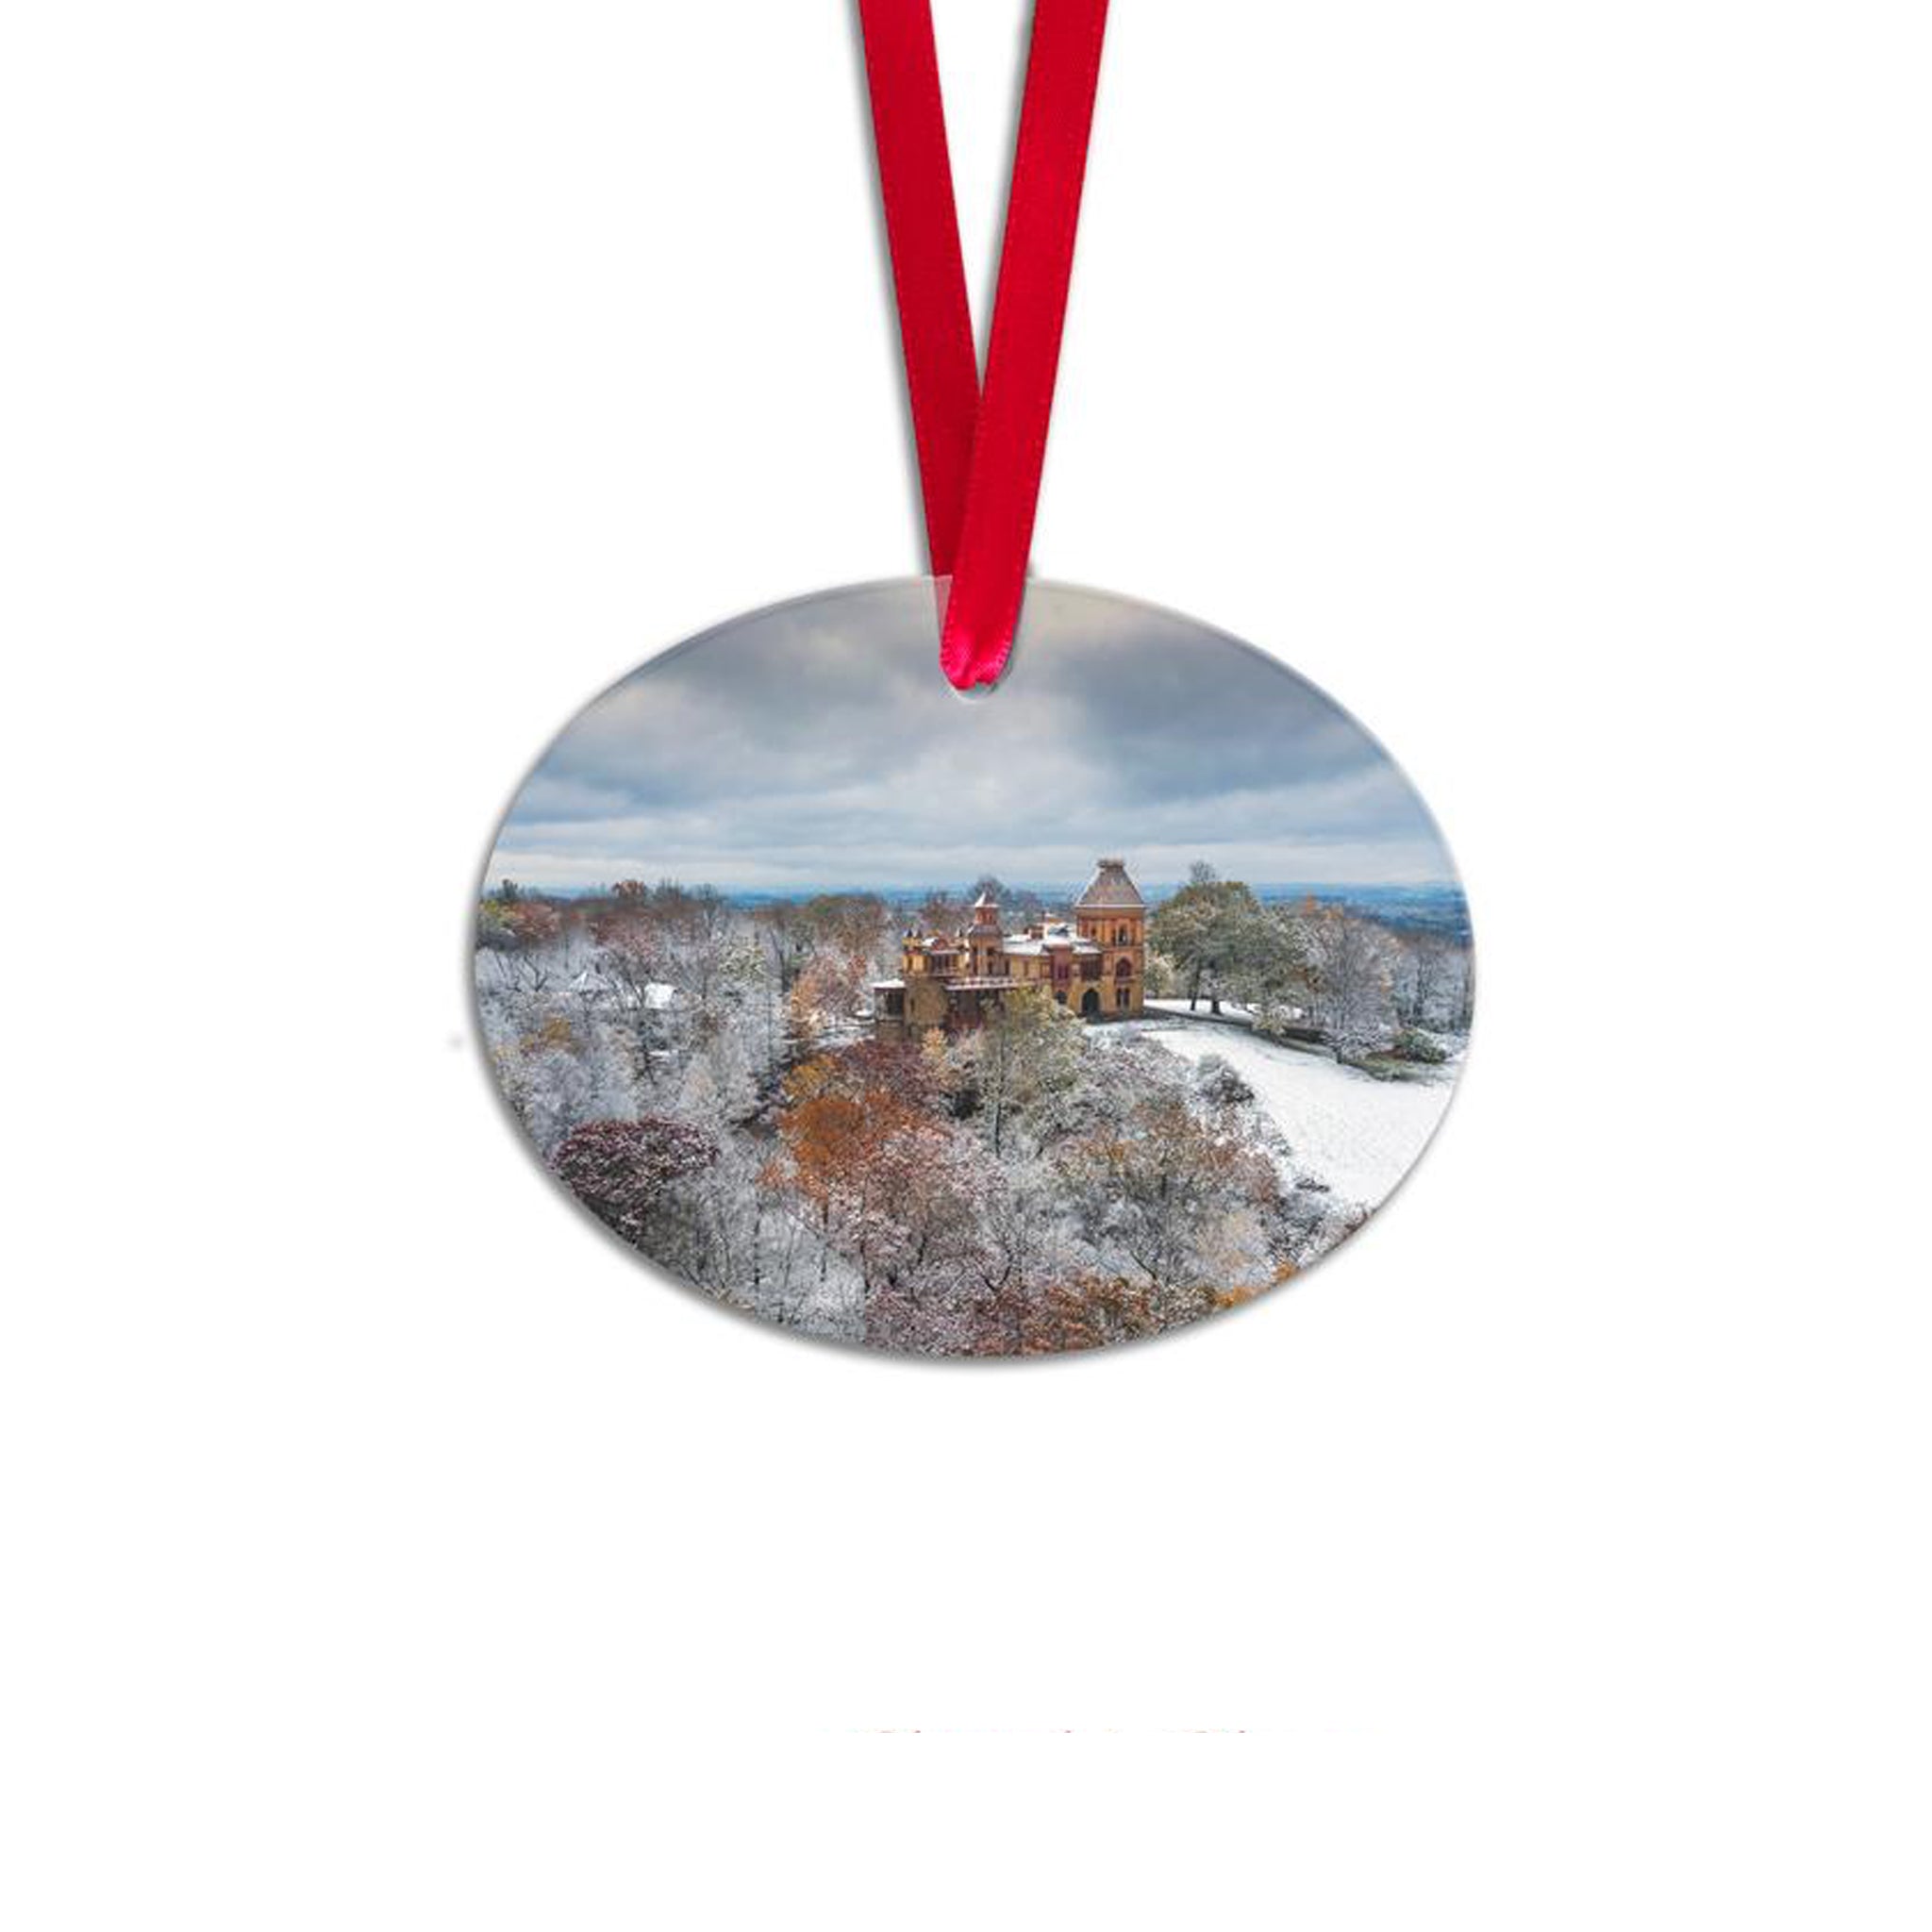 Frederic Church's Olana 2022 Holiday Ornament